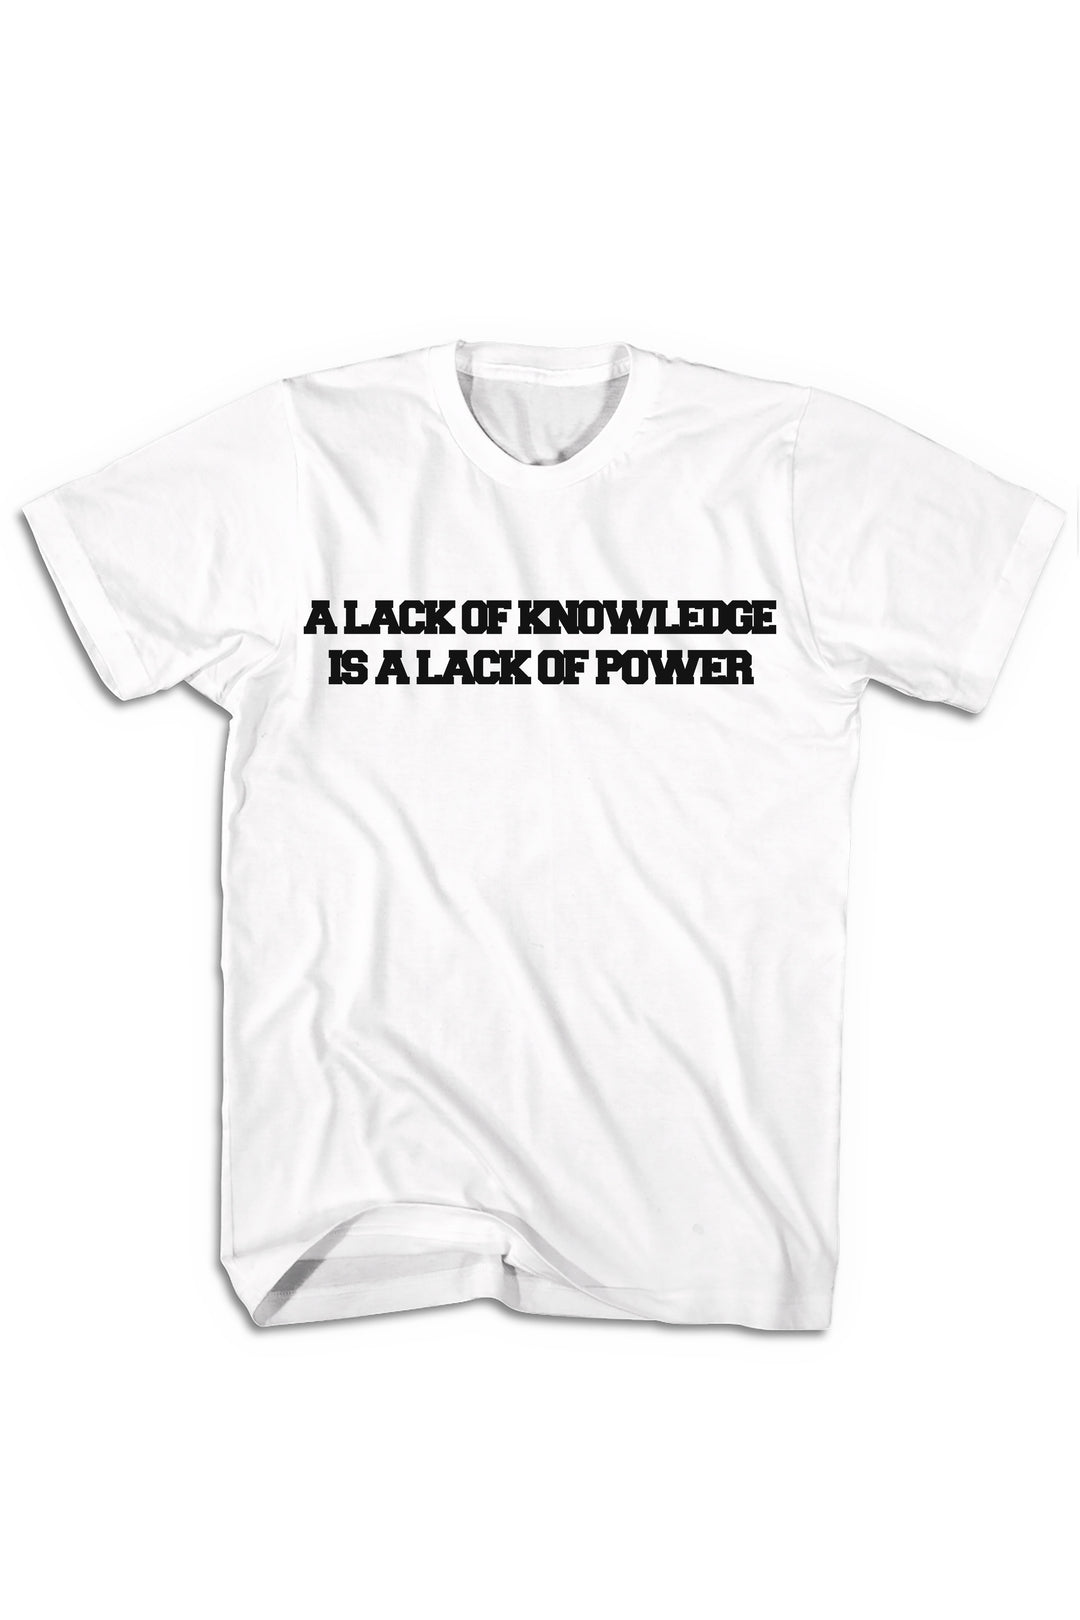 Knowledge & Power Tee (Black Logo) - Zamage